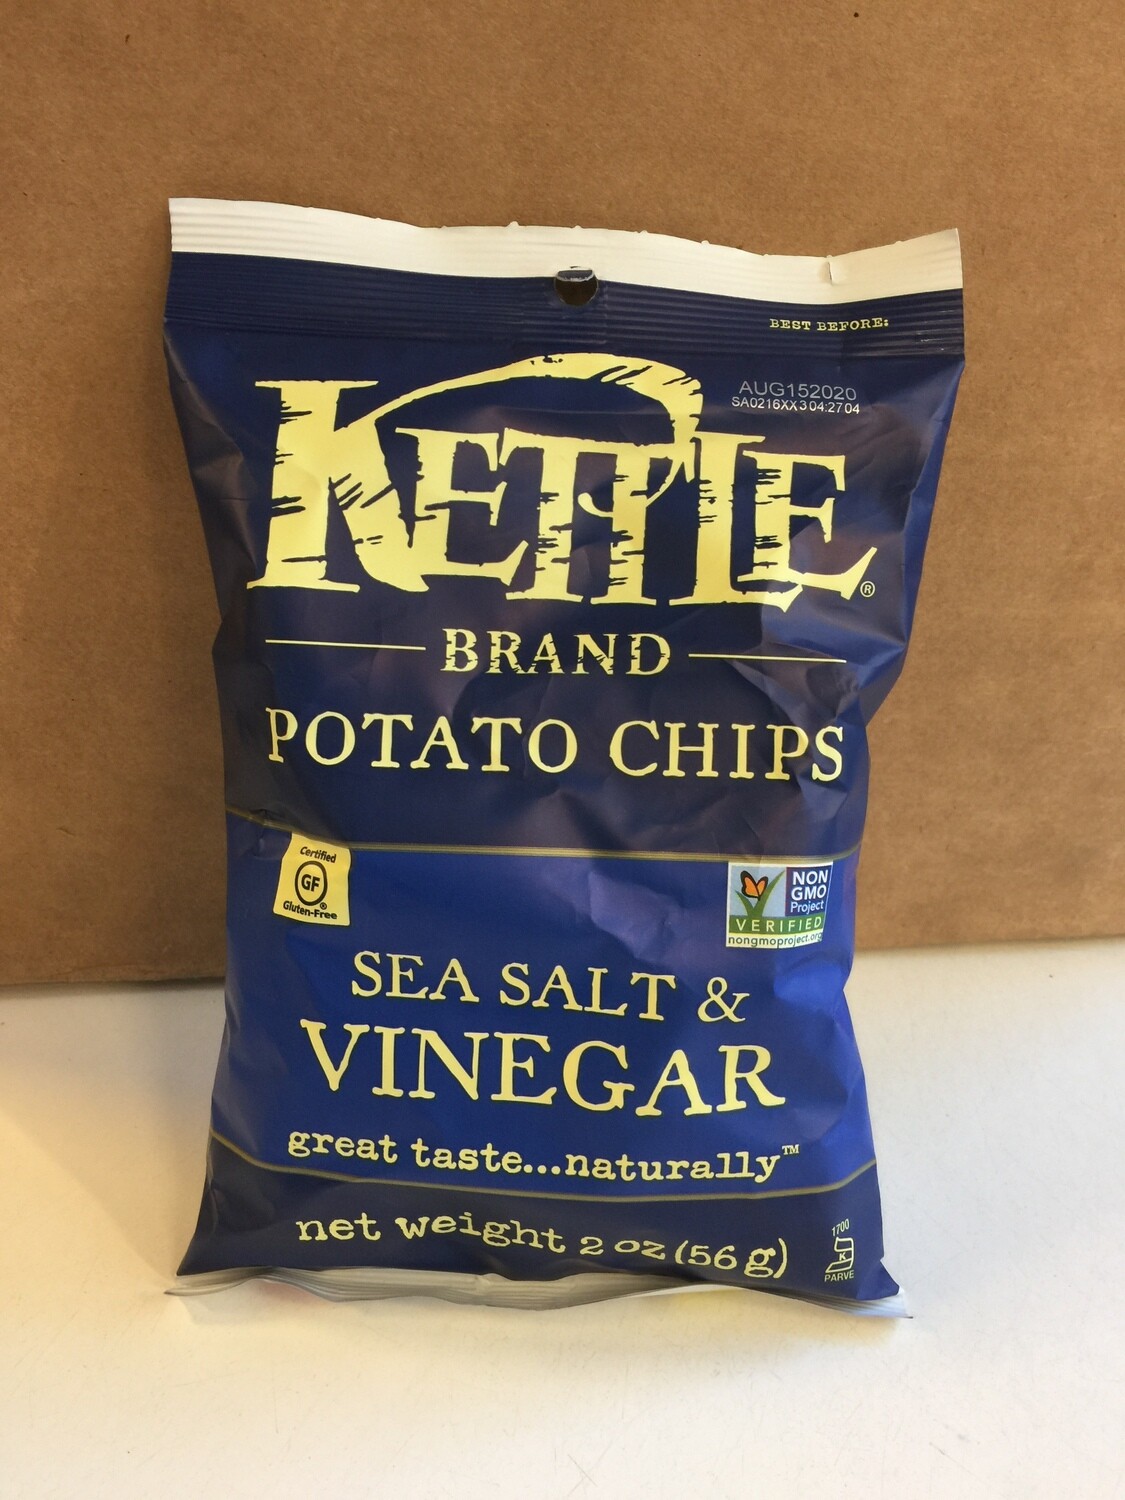 Chips / Small Bag / Kettle Chips Salt/Vinegar, 2 oz